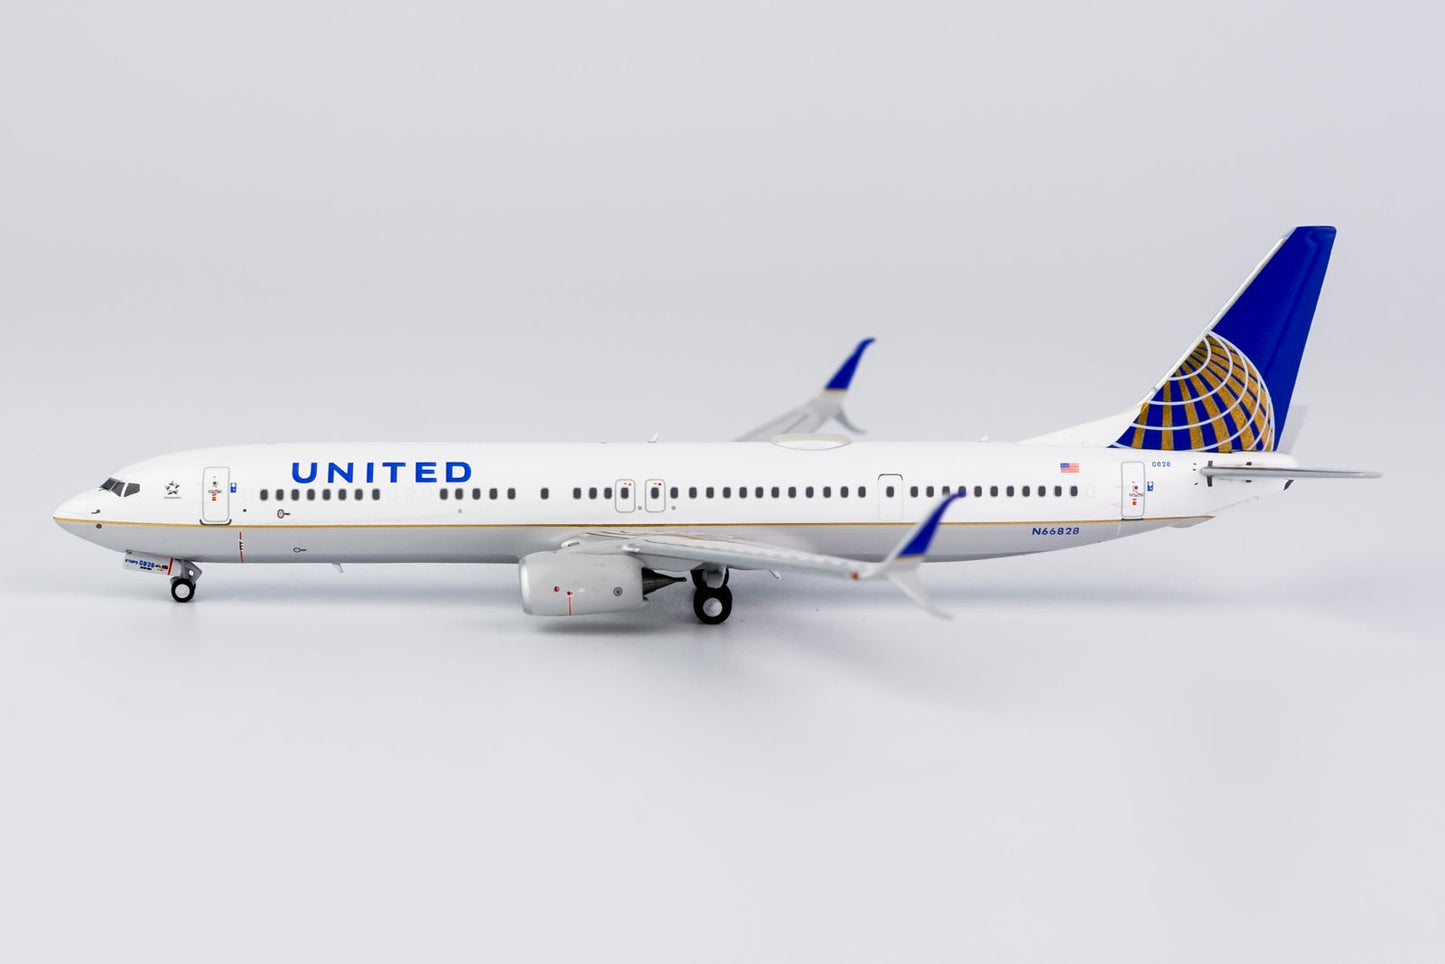 1/400 United Airlines B 737-900ER/w NG Models 79008s/d2 *Defective model*